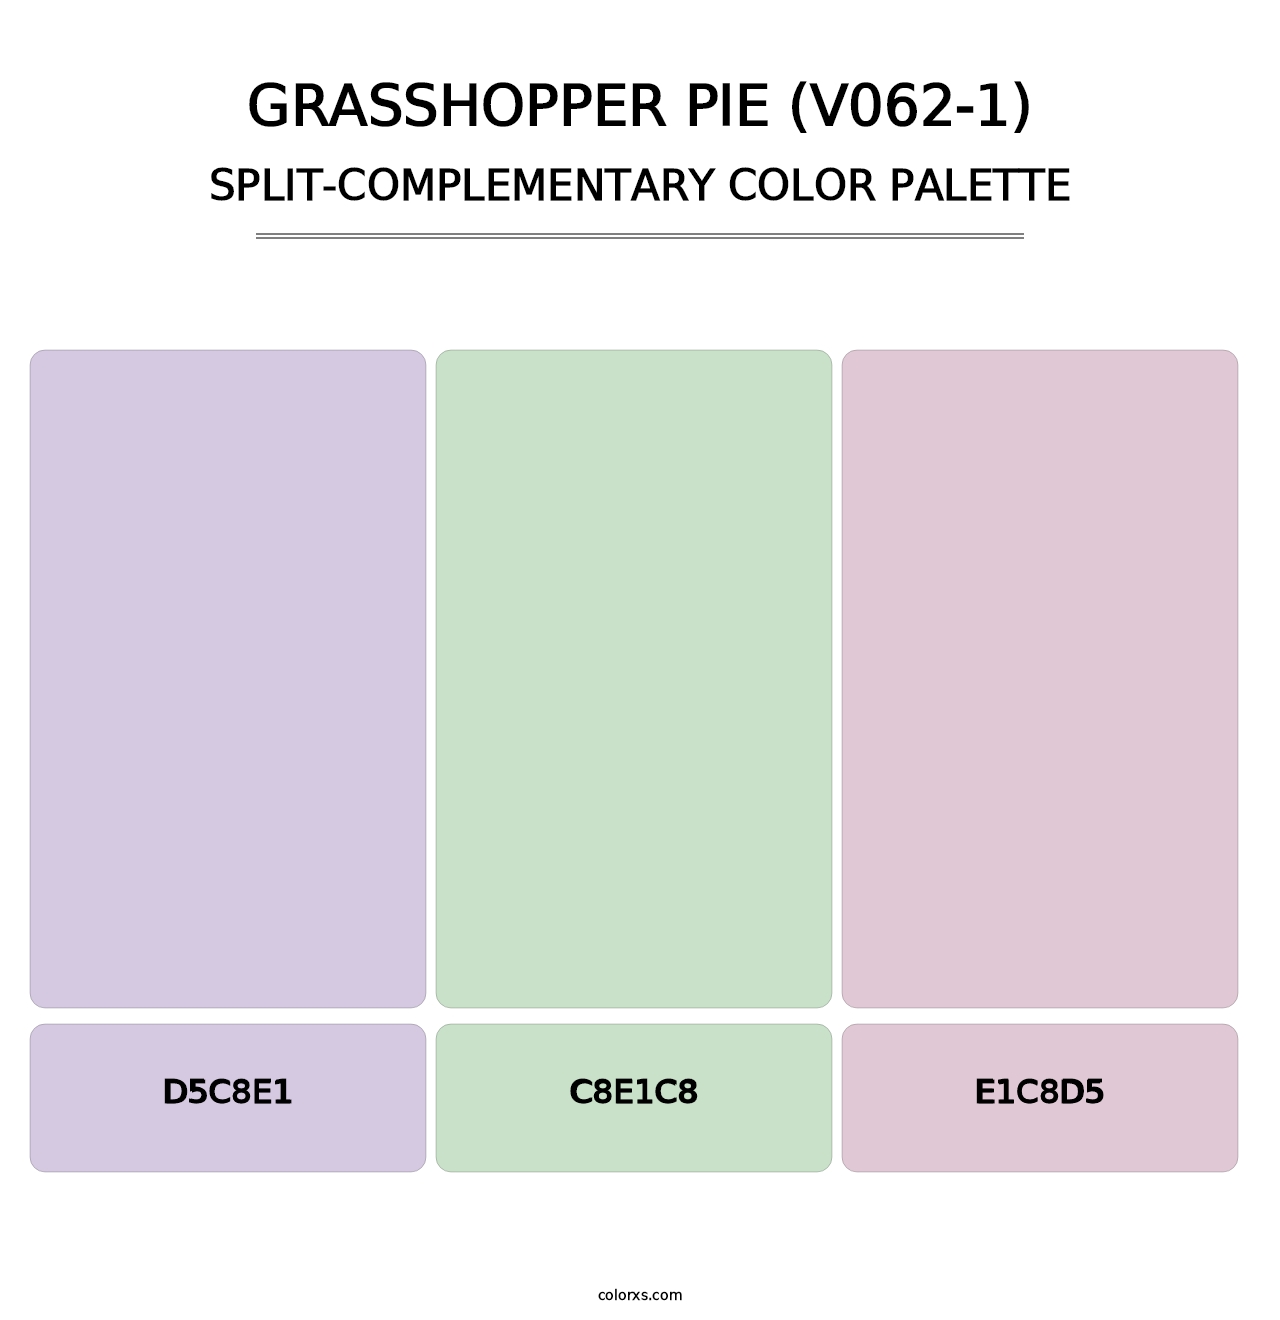 Grasshopper Pie (V062-1) - Split-Complementary Color Palette